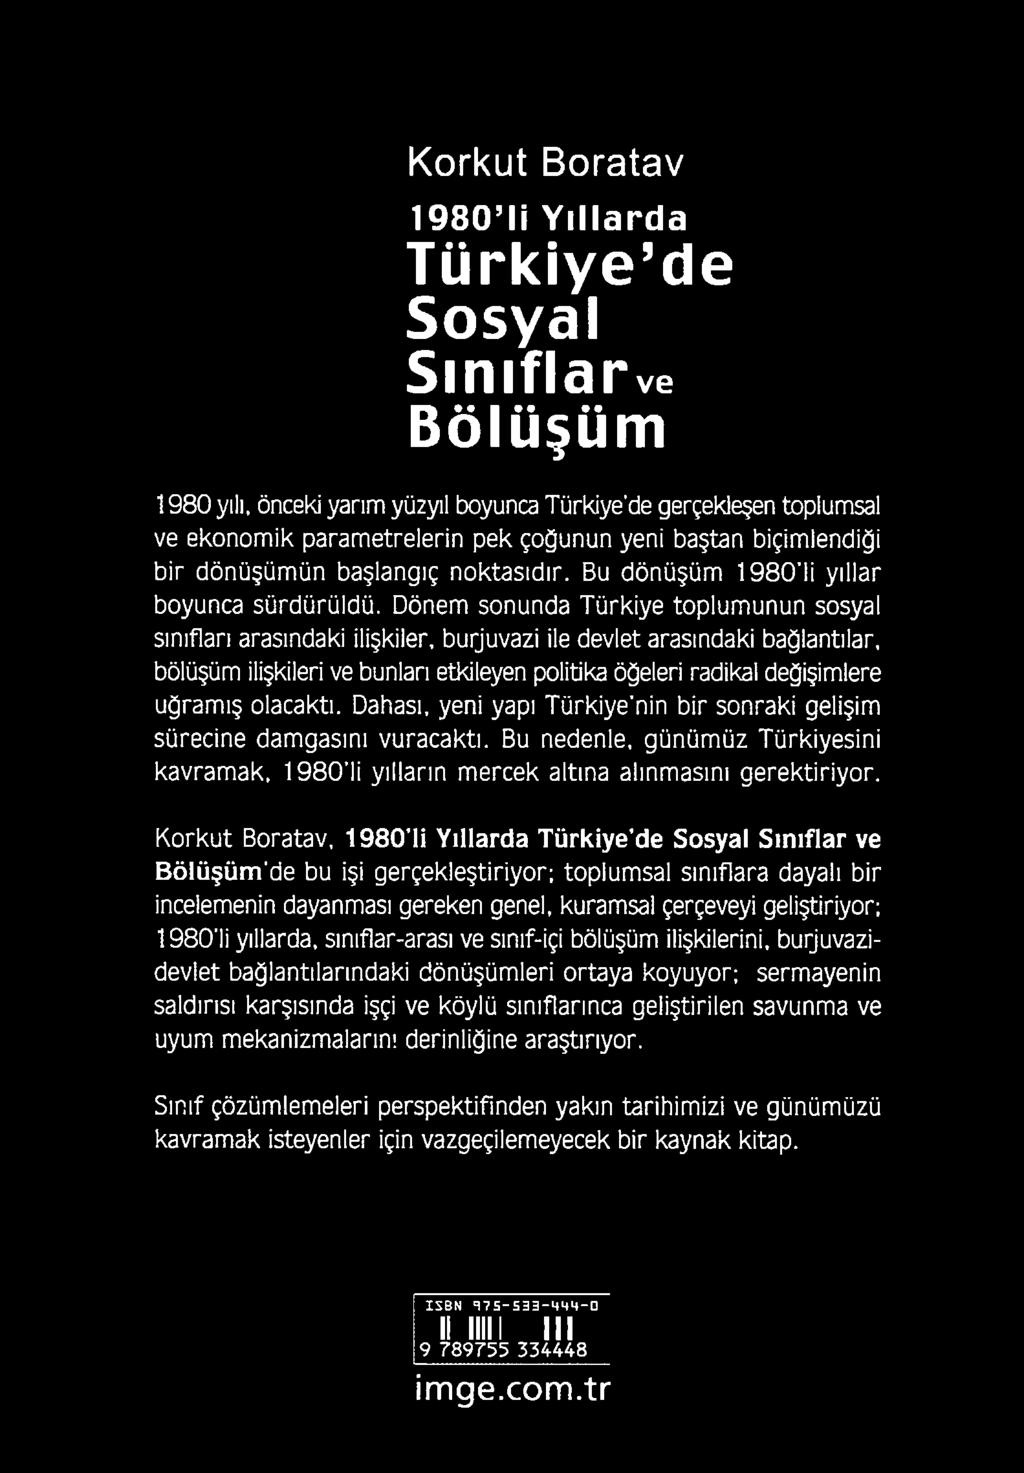 Korkut Boratav, 1980 li Yıllarda Türkiye de Sosyal Sınıflar ve Bölüşüm de bu işi gerçekleştiriyor; toplumsal sınıflara dayalı bir incelemenin dayanması gereken genel, kuramsal çerçeveyi geliştiriyor;